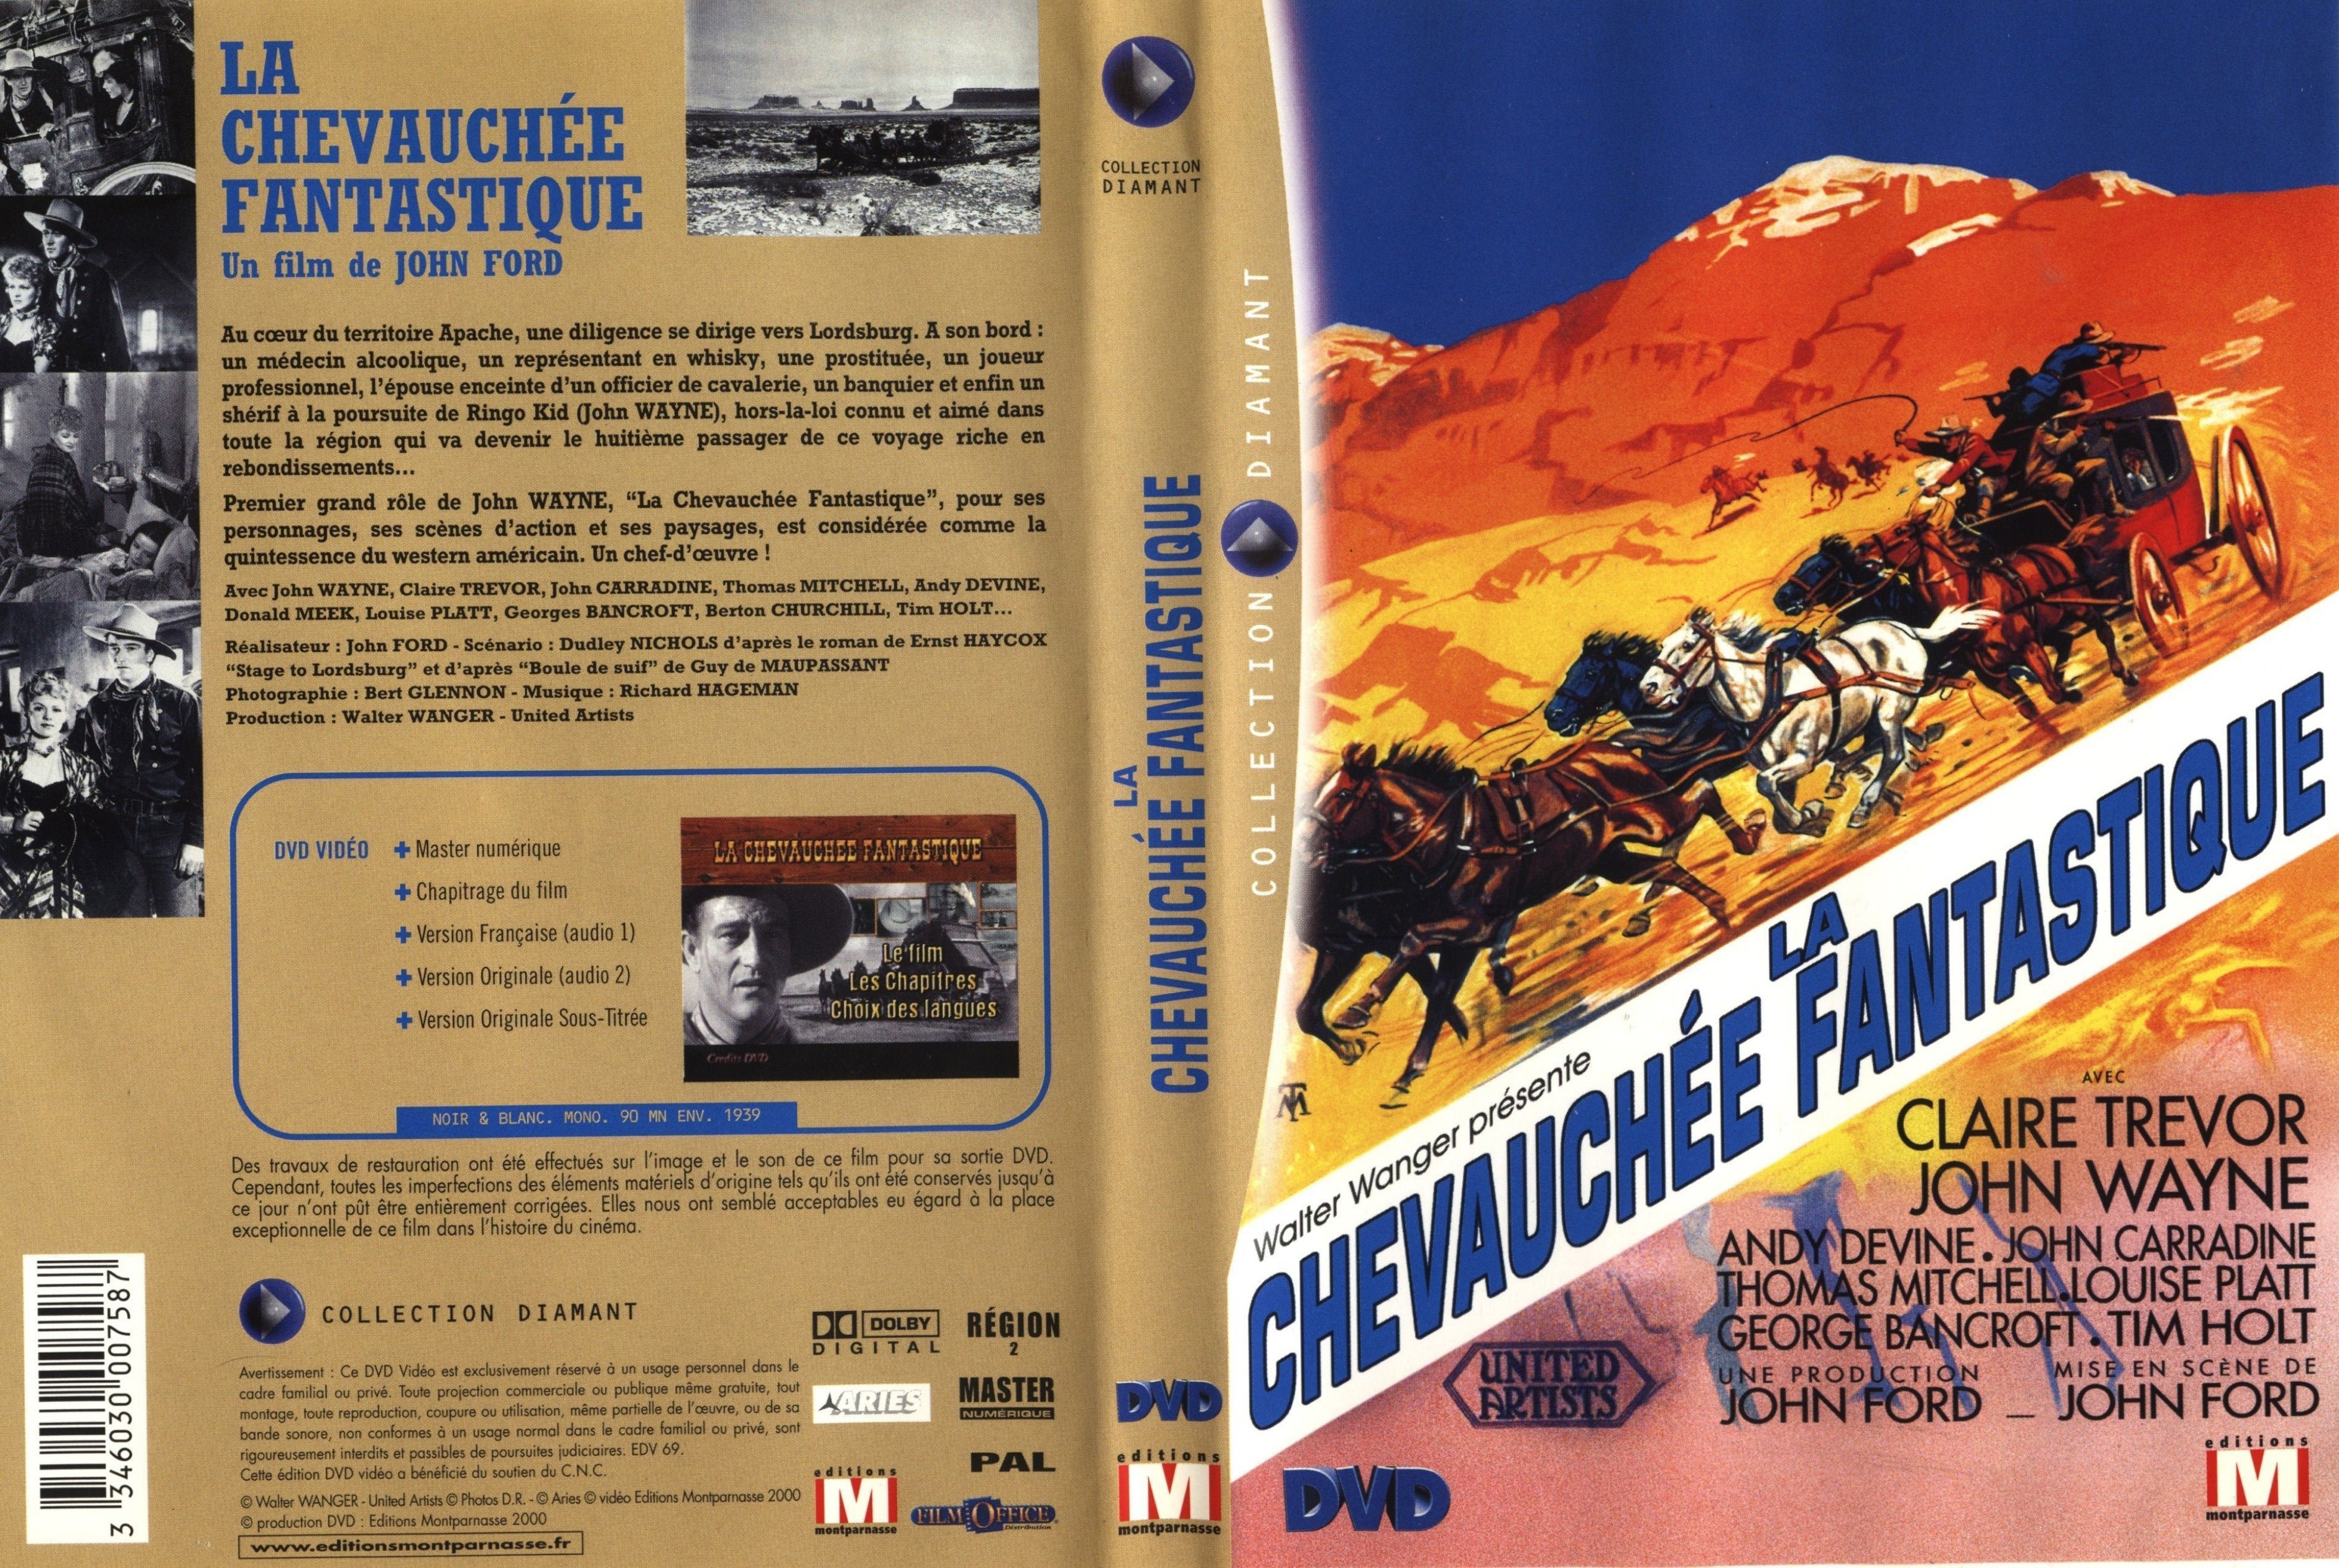 Jaquette DVD La chevauche fantastique v2